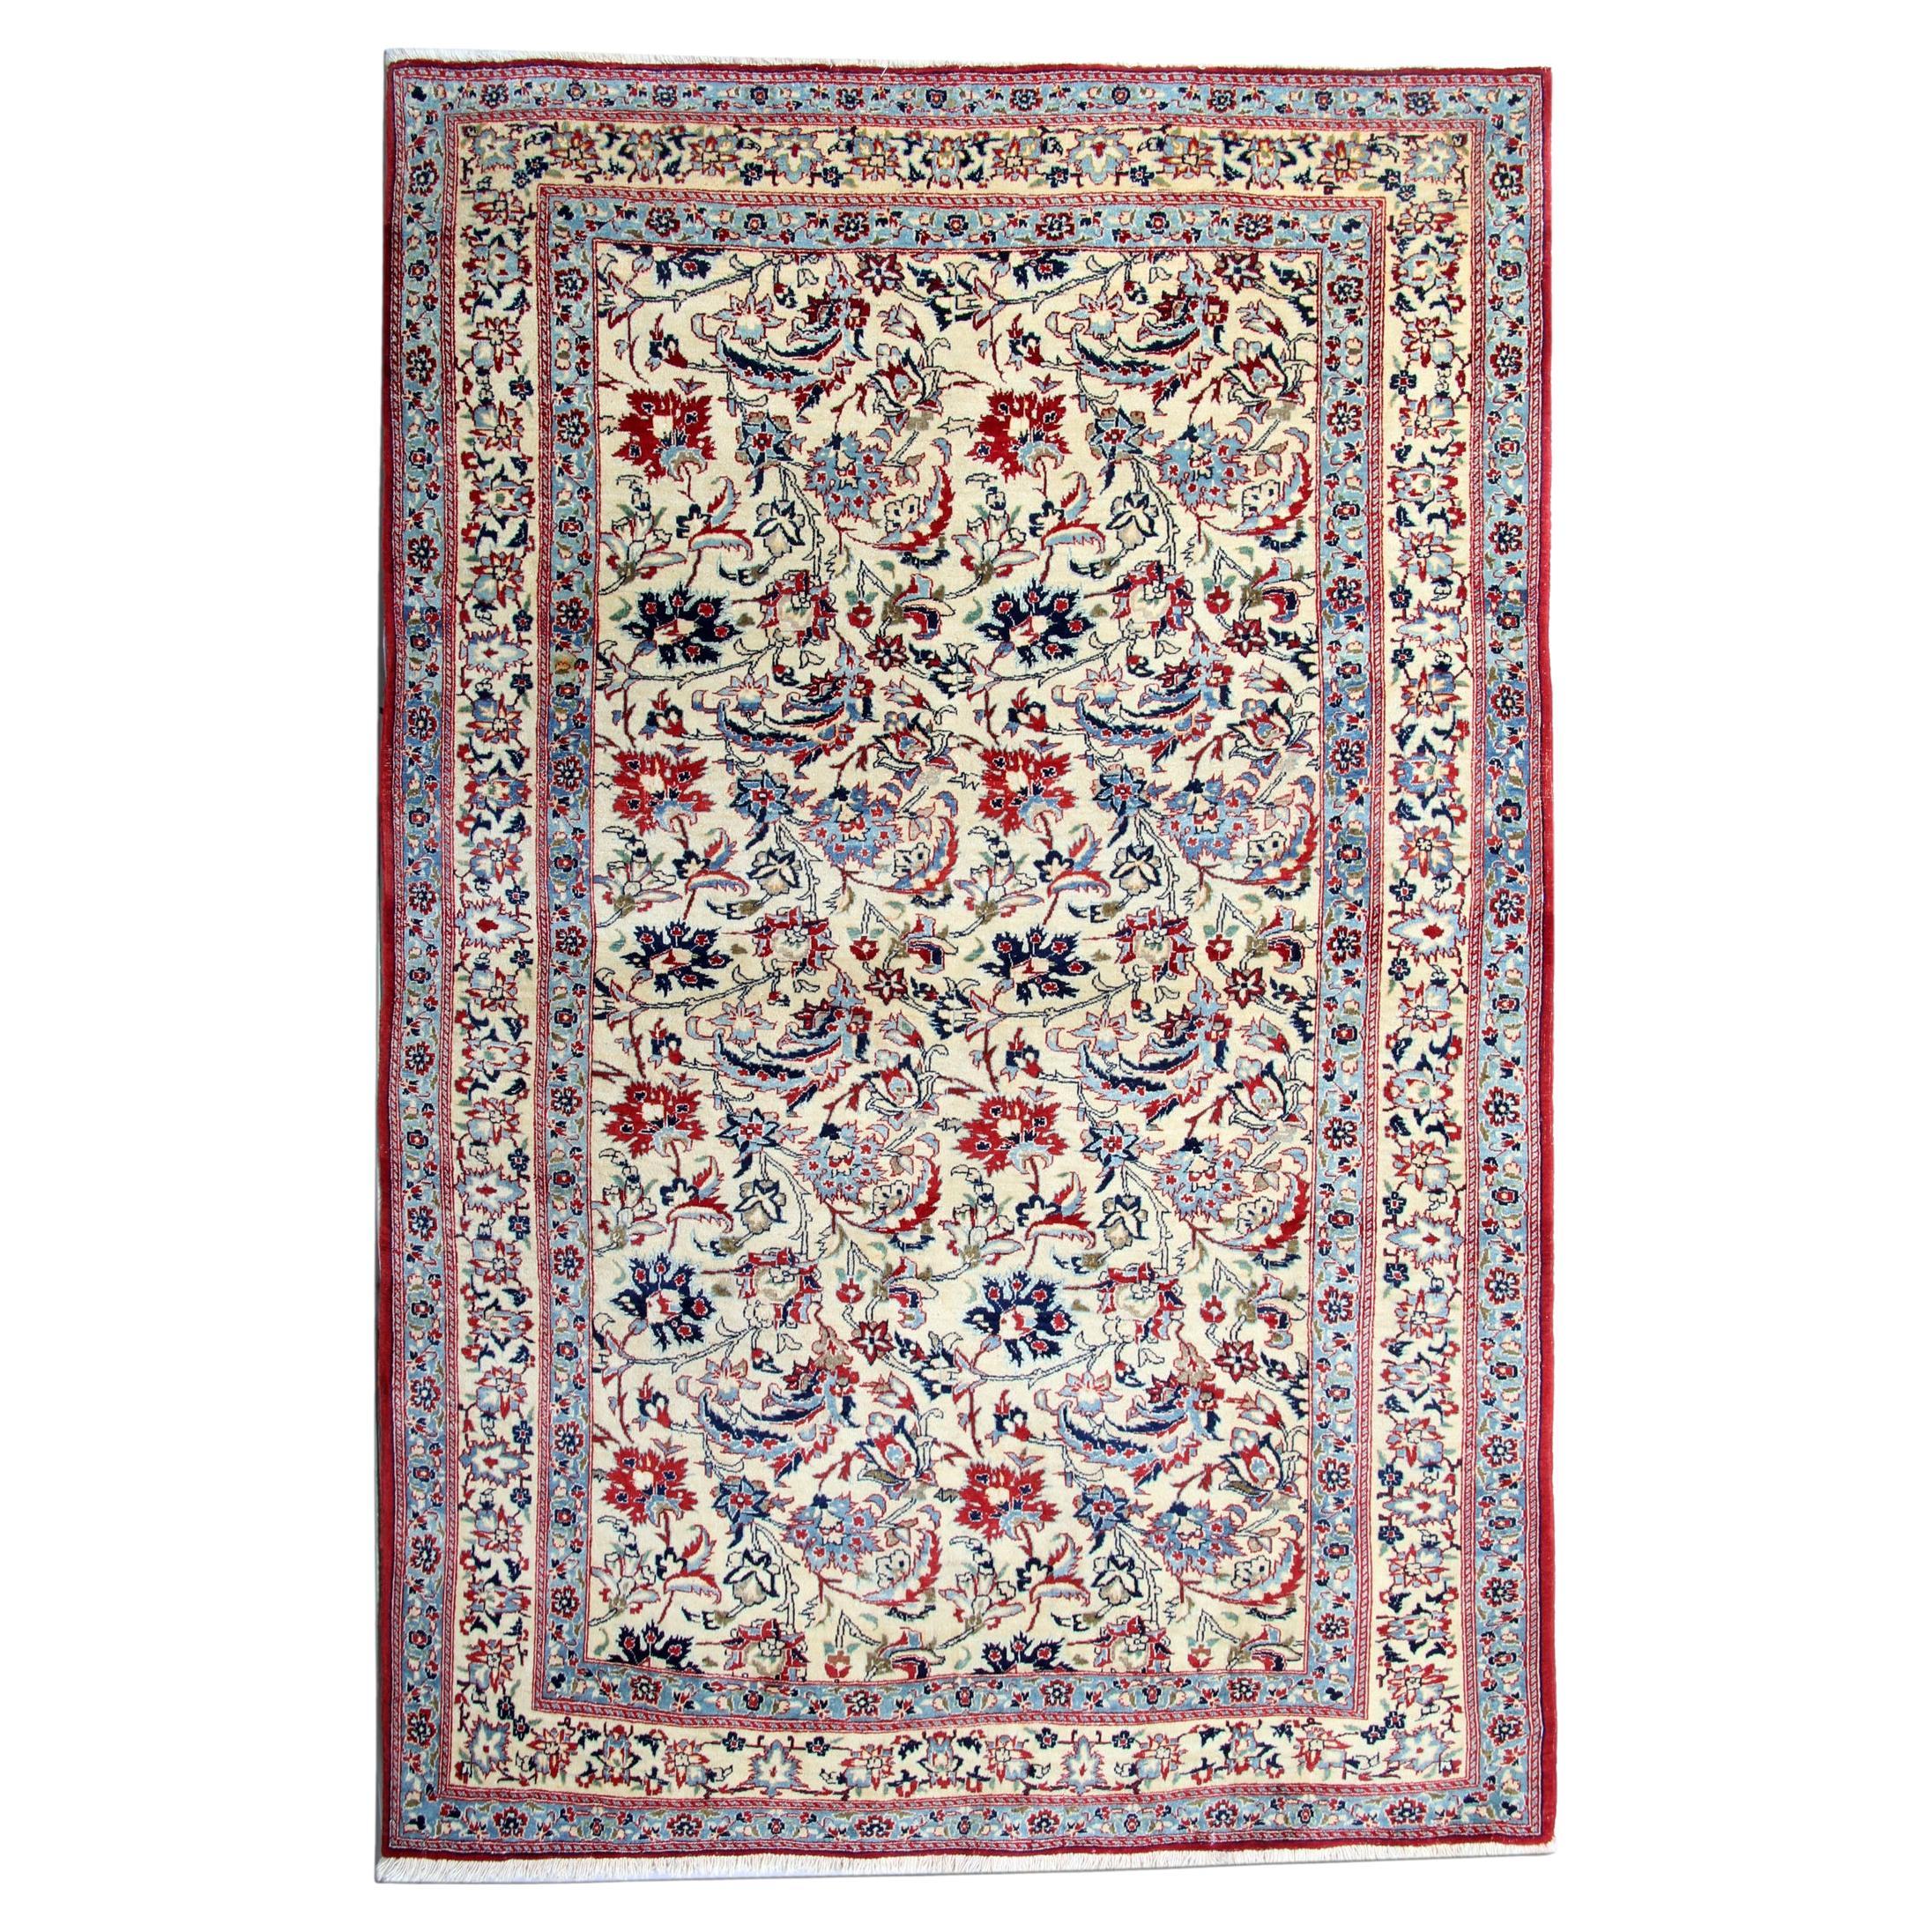 Antiker handgewebter antiker geblümter Teppich aus cremeblauer Wolle für Wohnzimmer